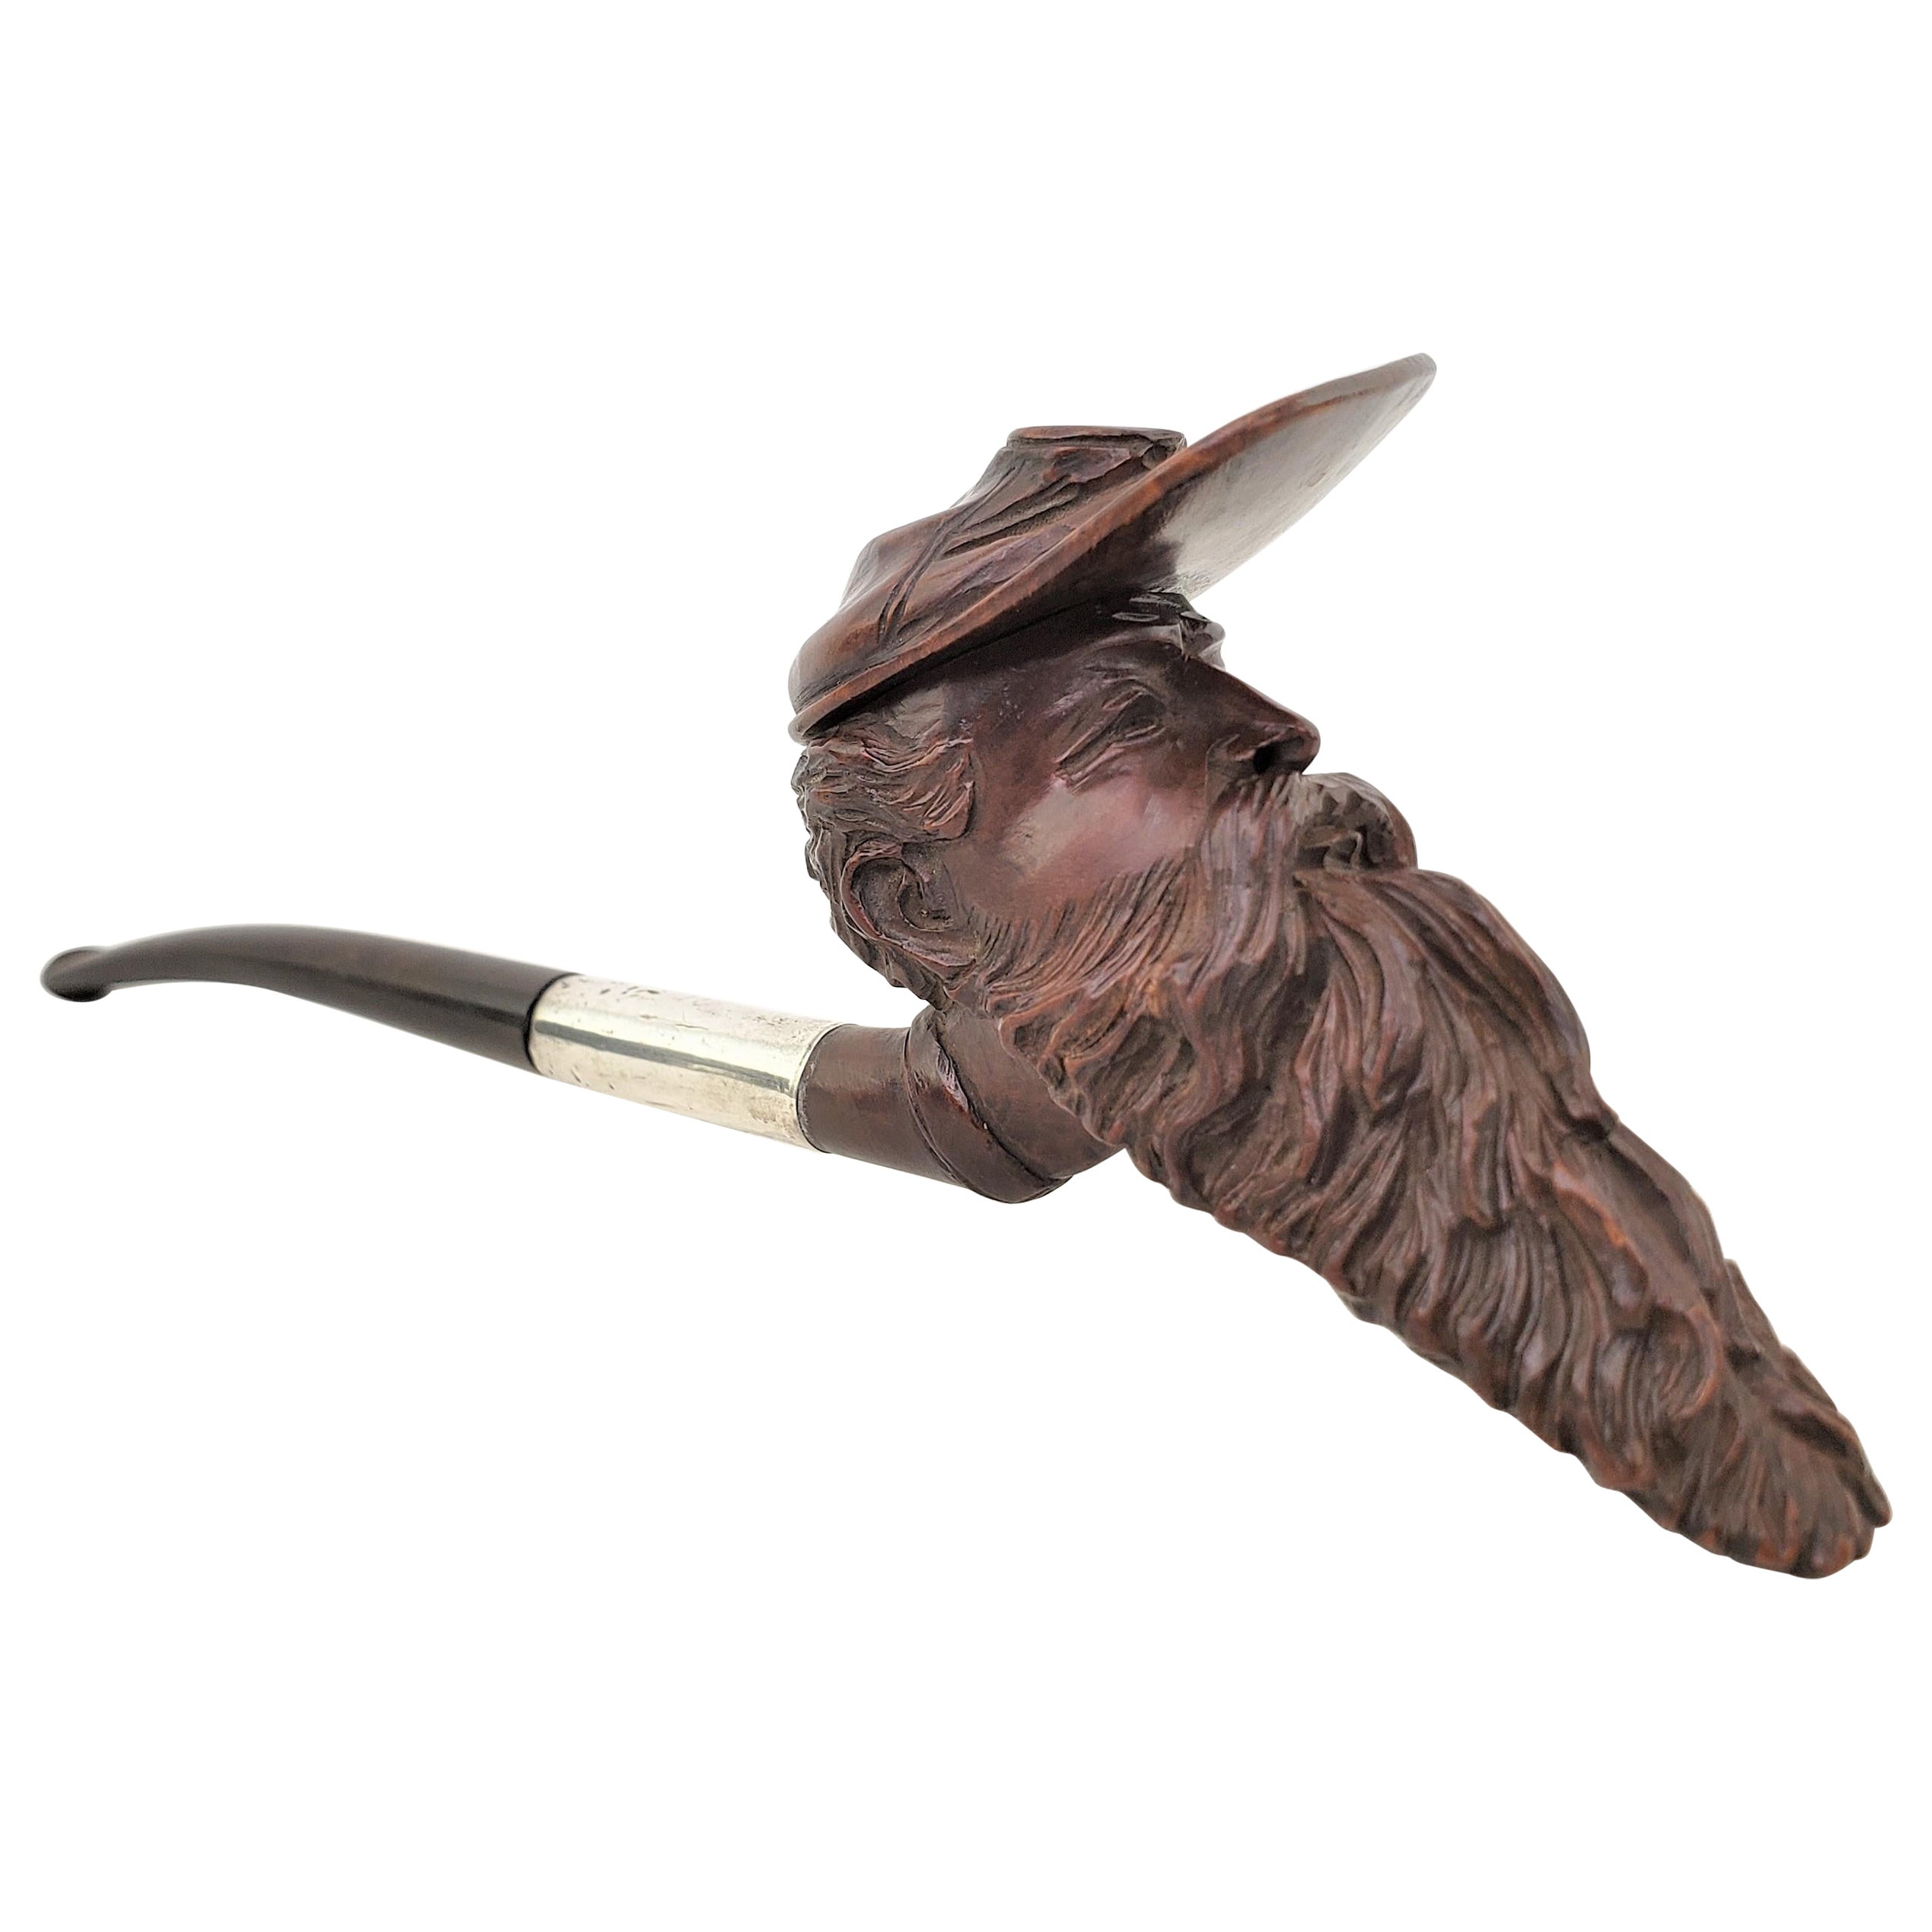 Ancienne pipe à fumer figurative en bois dur sculptée à la main, de style soldat confédéré en vente